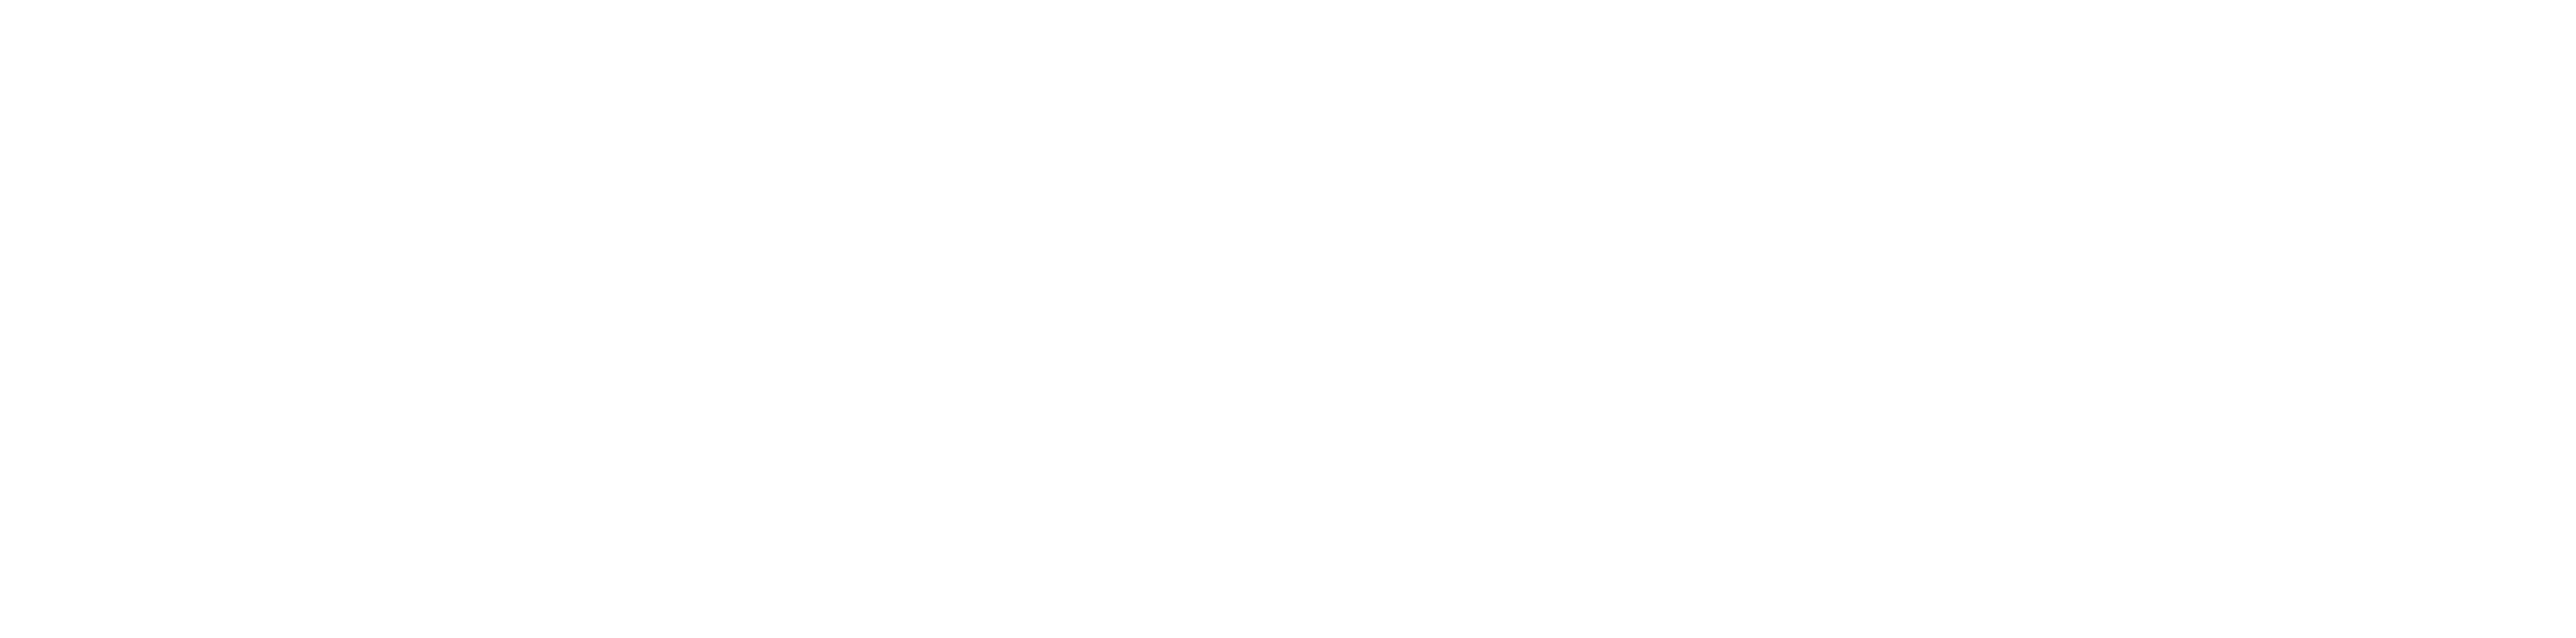 plan9 Logo 2021